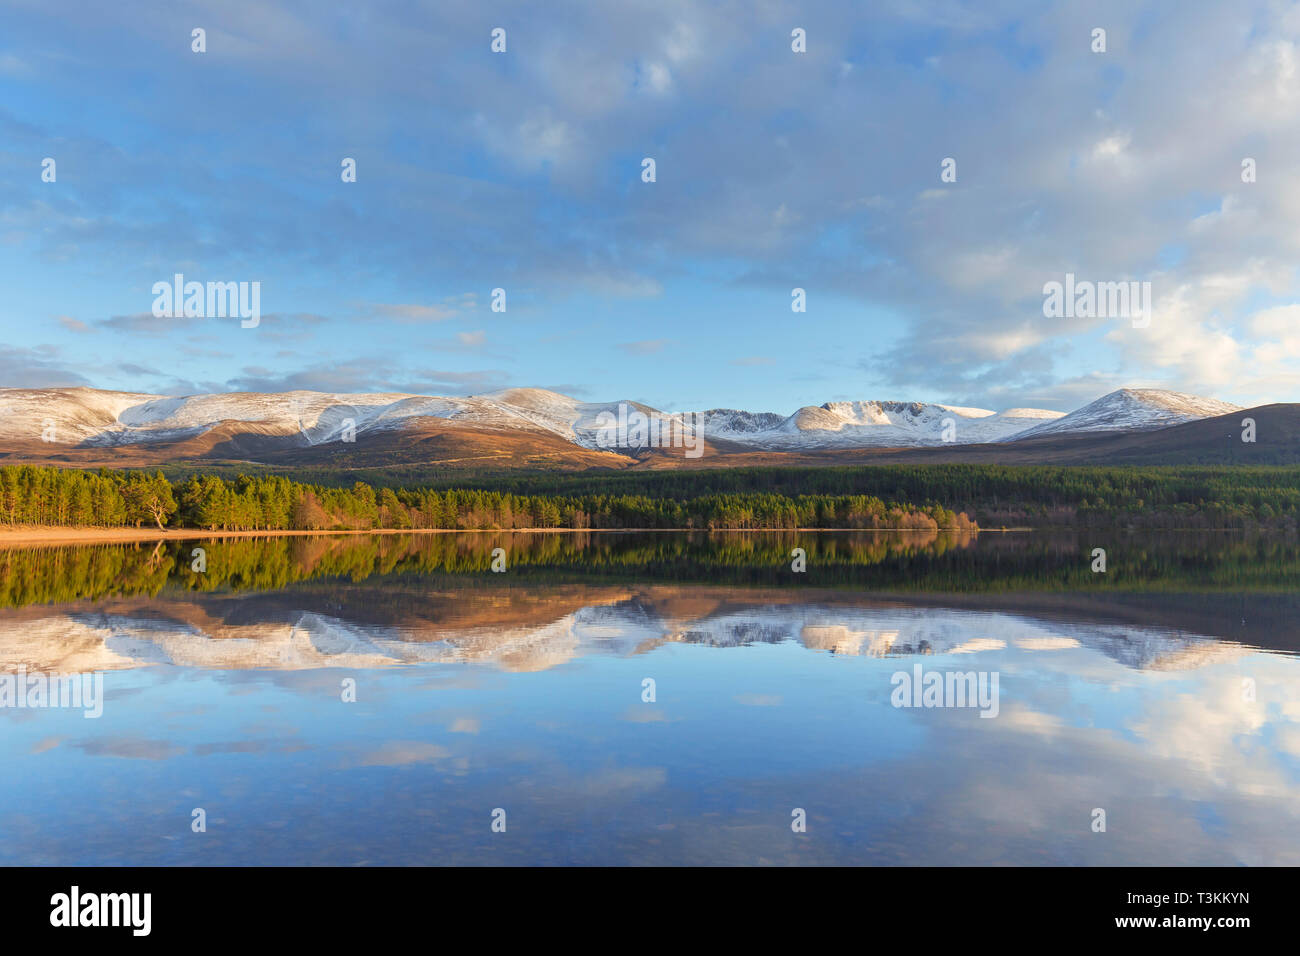 Le Loch Morlich et montagnes de Cairngorm, le Parc National de Cairngorms près d'Aviemore, Badenoch et Strathspey, Ecosse, Royaume-Uni Banque D'Images